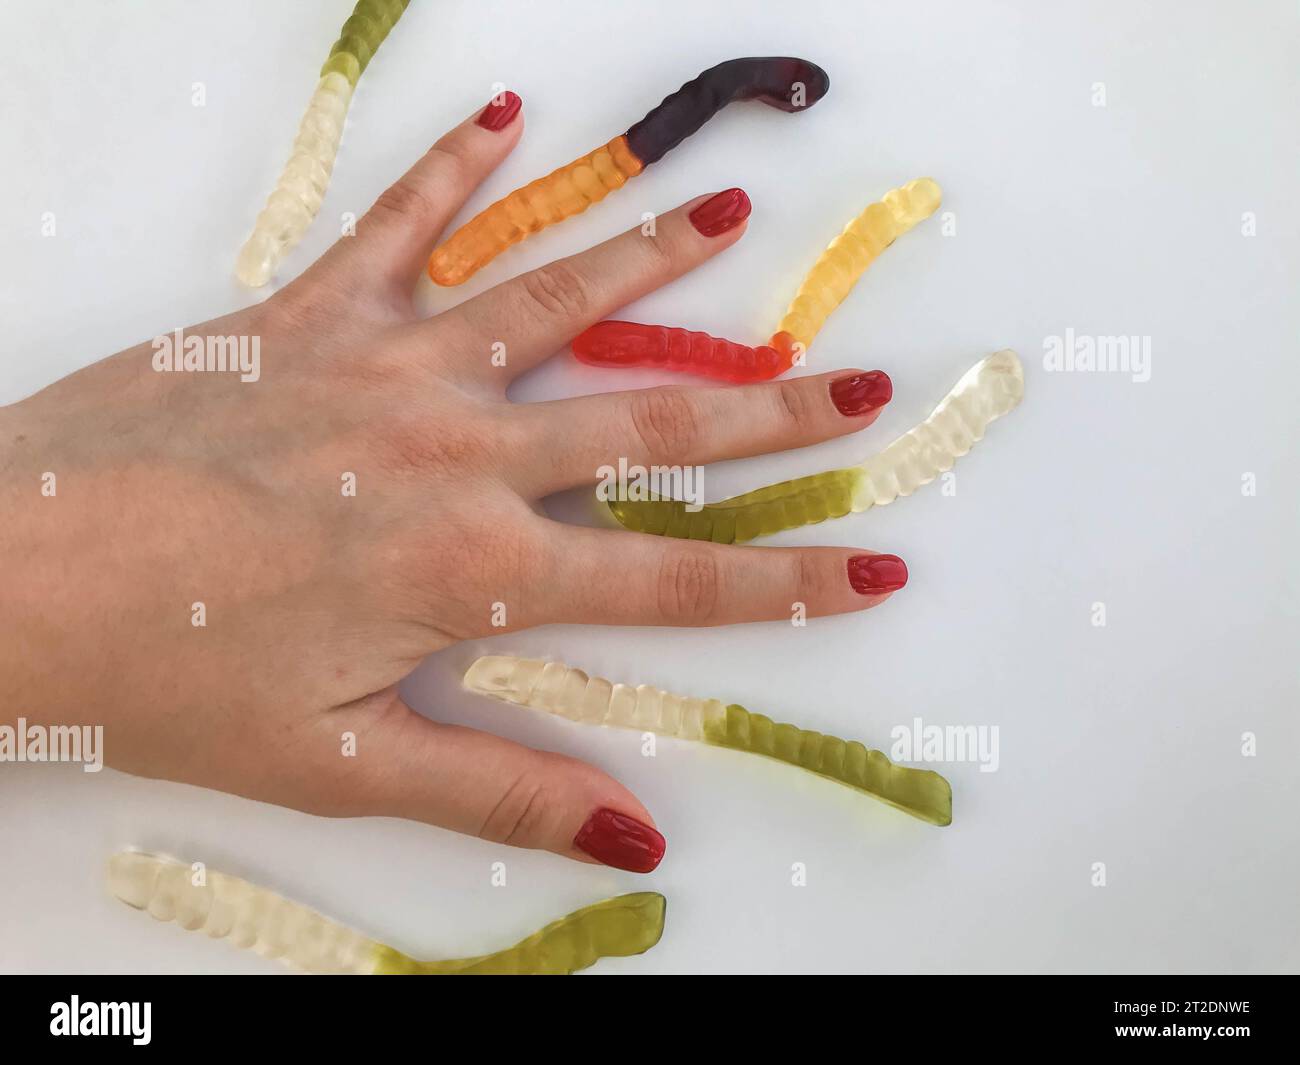 Lange, mundtränende, mehrfarbige Würmer auf der Hand eines Mädchens mit einer hellroten Maniküre. Die Würmer liegen zwischen den Fingern. Ungewöhnliches Dessertservieren Stockfoto